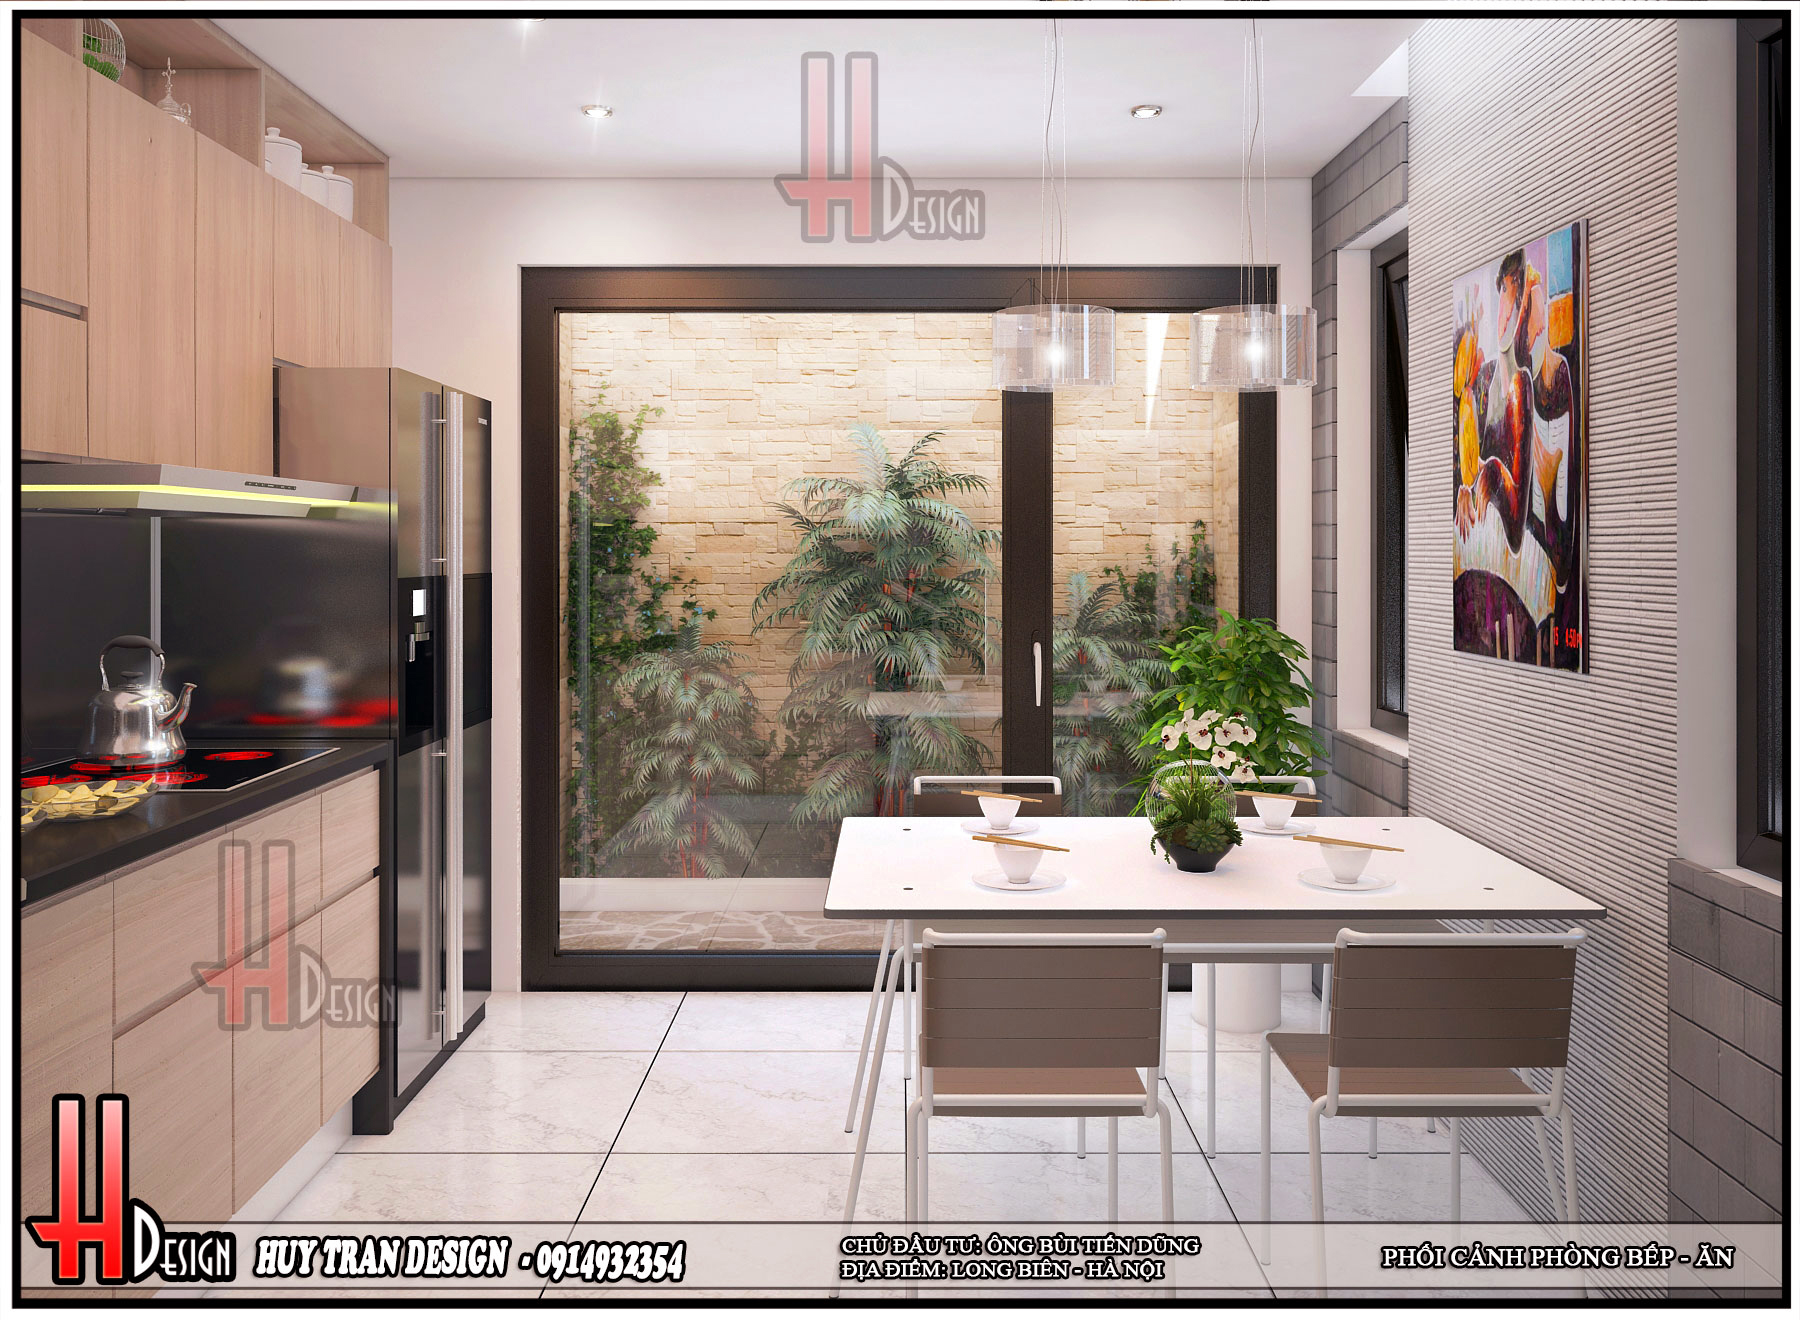 Thiết kế nội thất phòng bếp nhà 4 tầng hiện đại - Huytrandesign